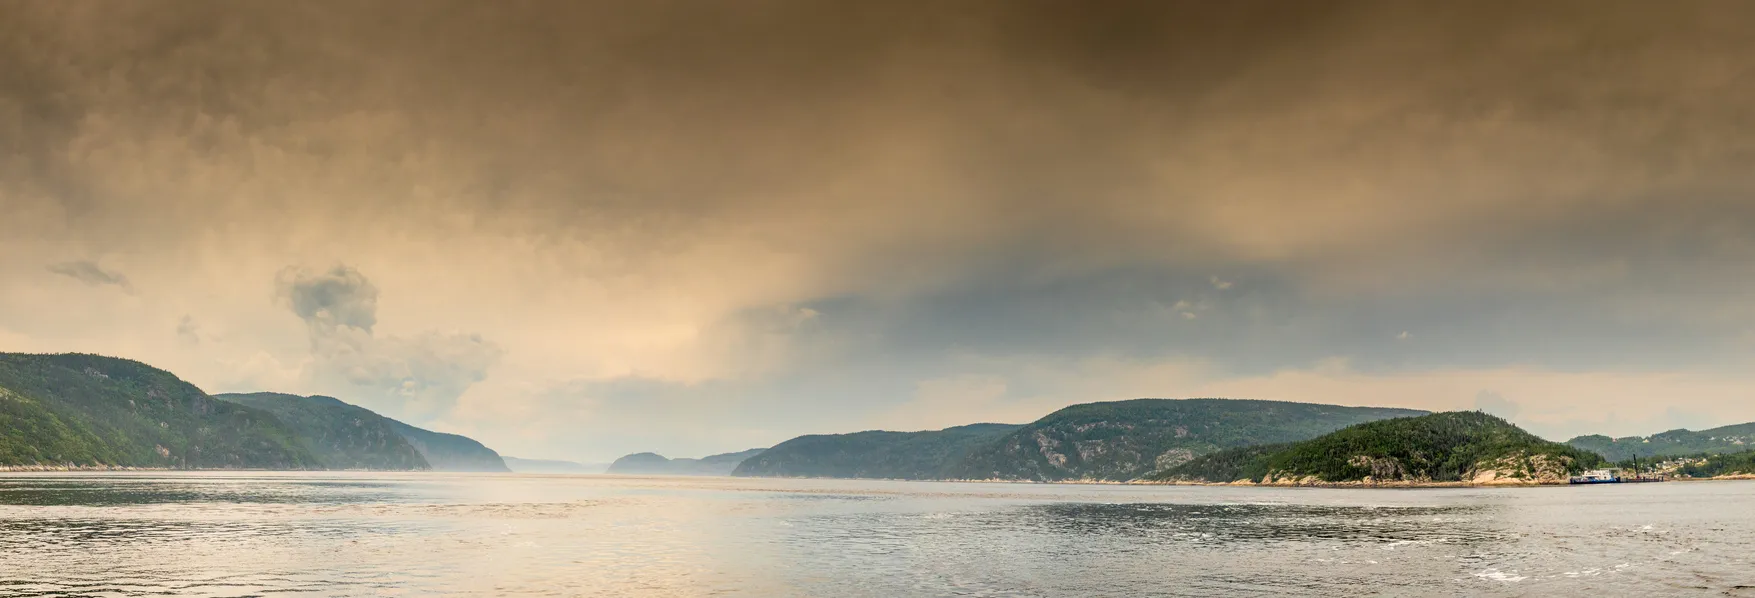 Vue panoramique du parc marin du Saguenay-Saint-Laurent où les deux rivières se rencontrent; on peut voir l’embouchure du fjord du Saguenay © iStock / Instants